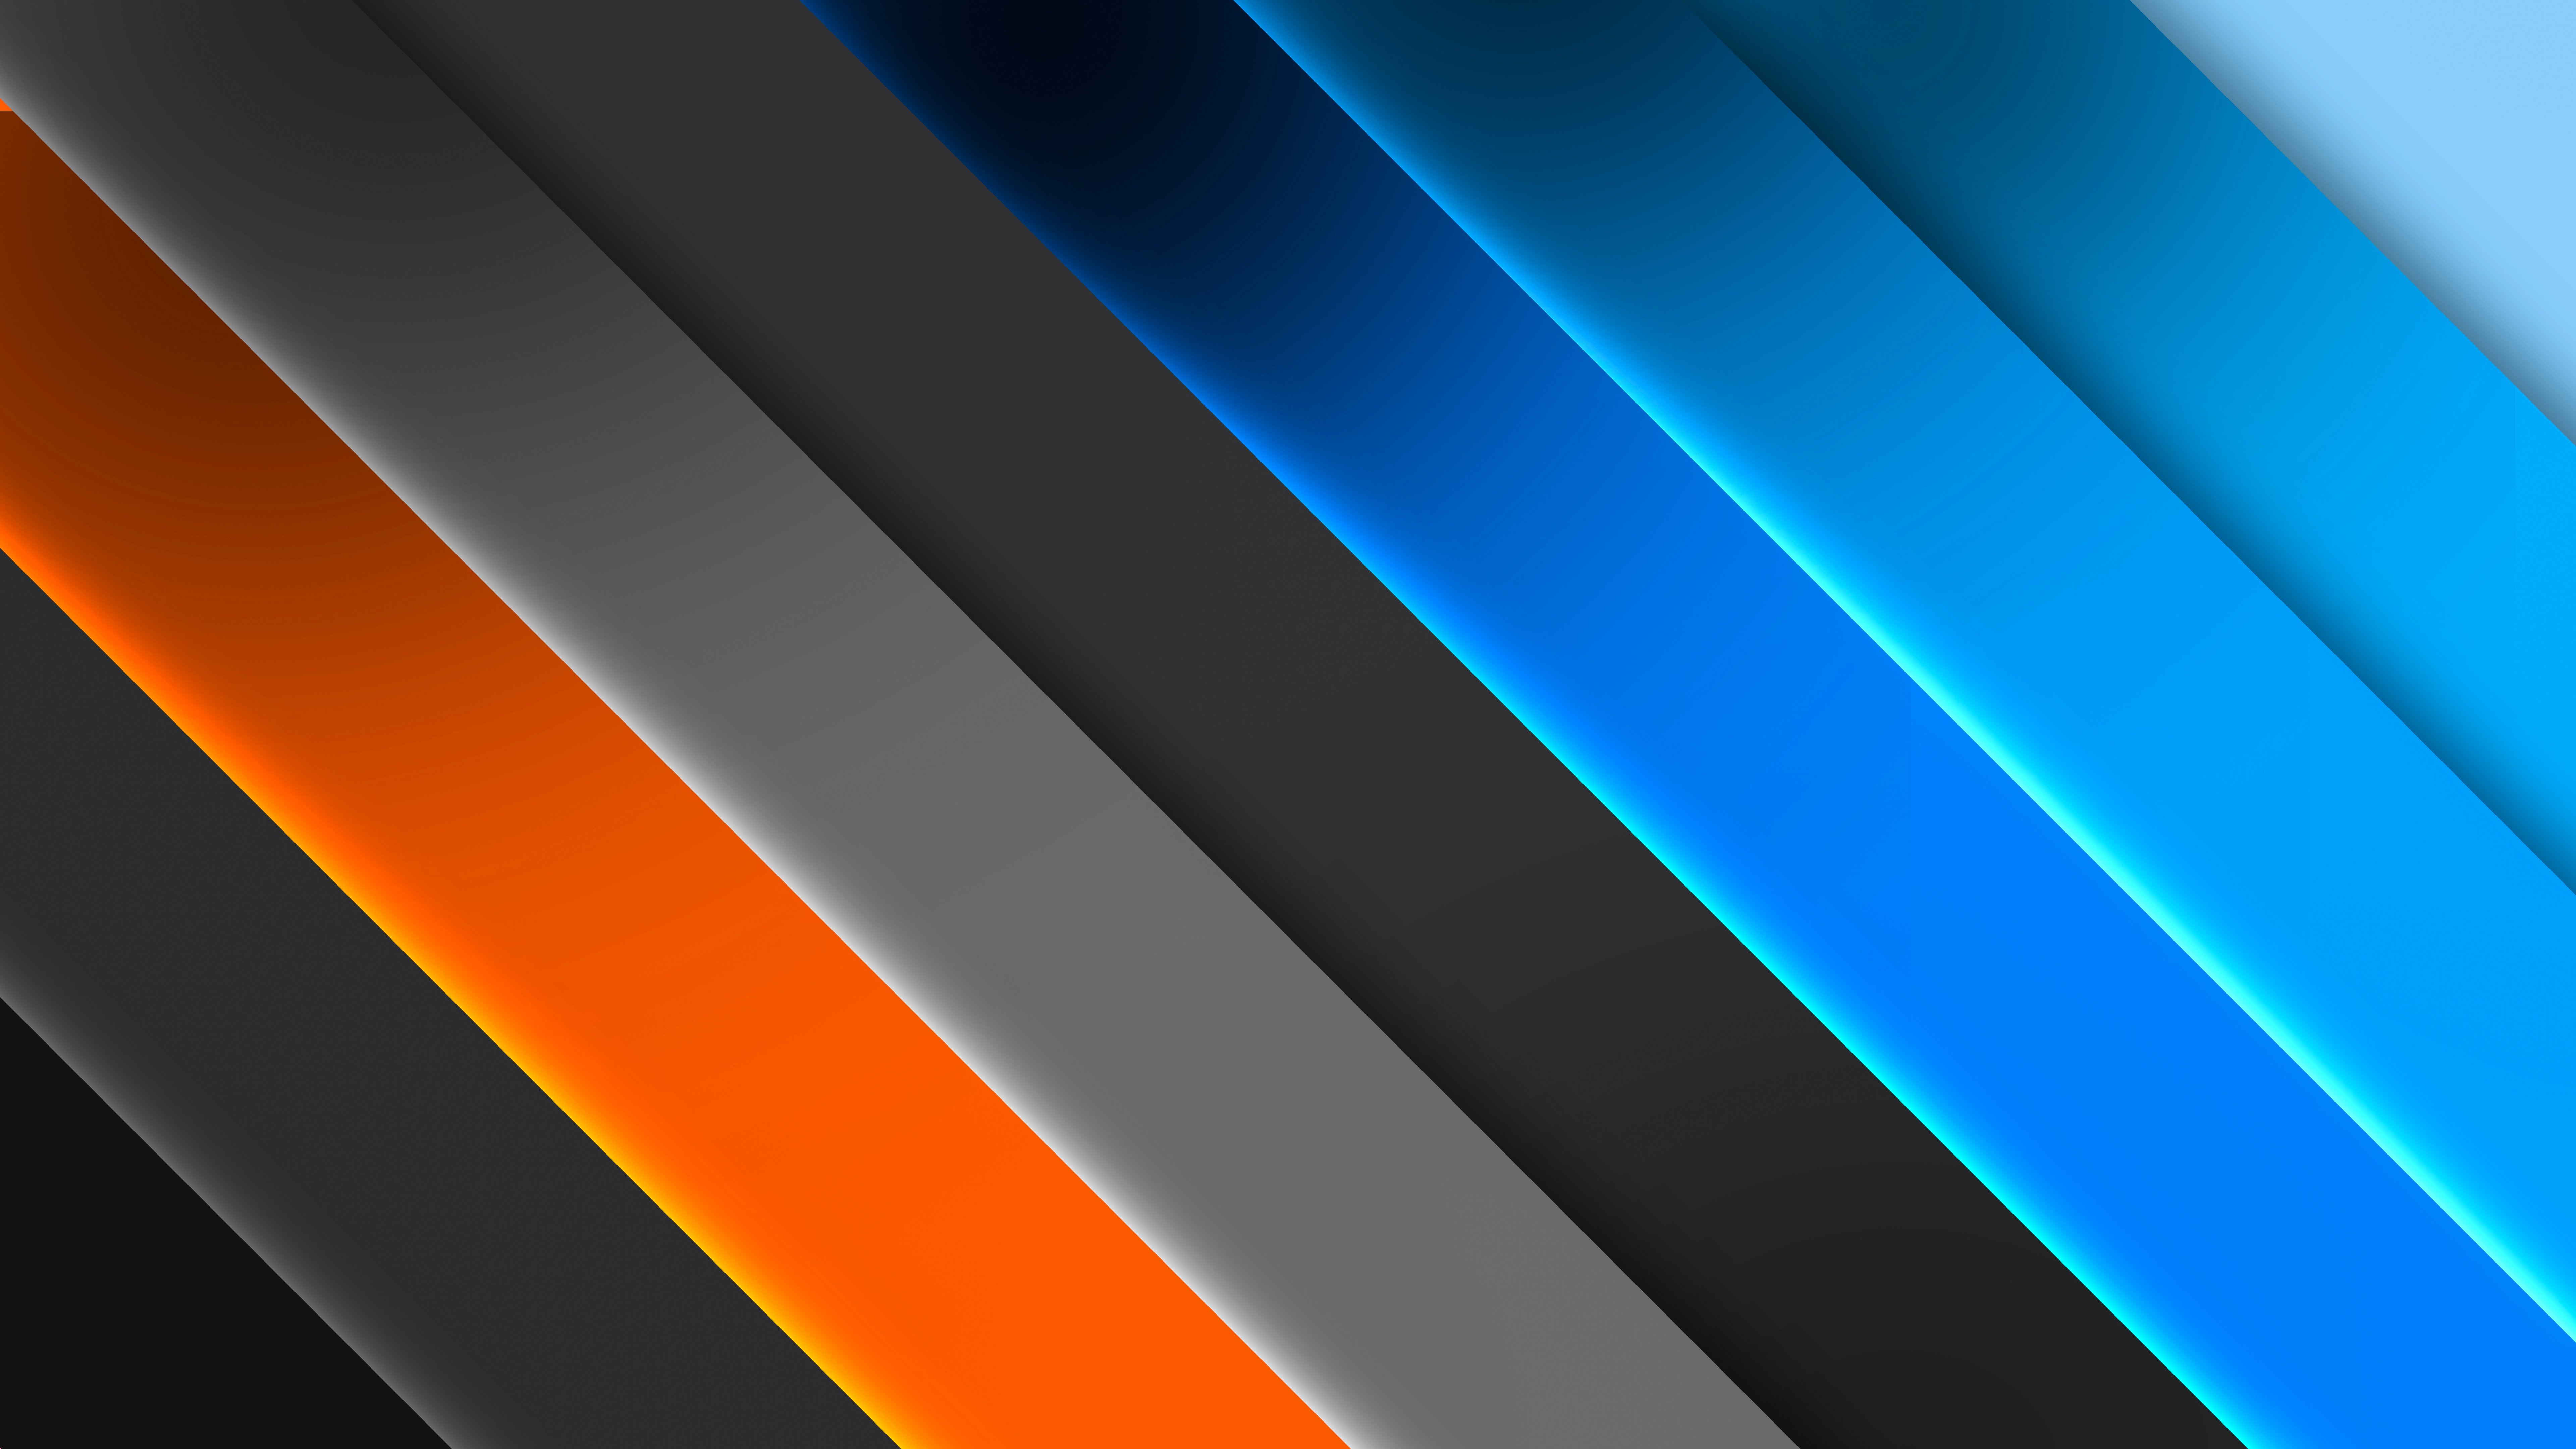 Fondos de pantalla Paleta de colores azul, naranja y gris